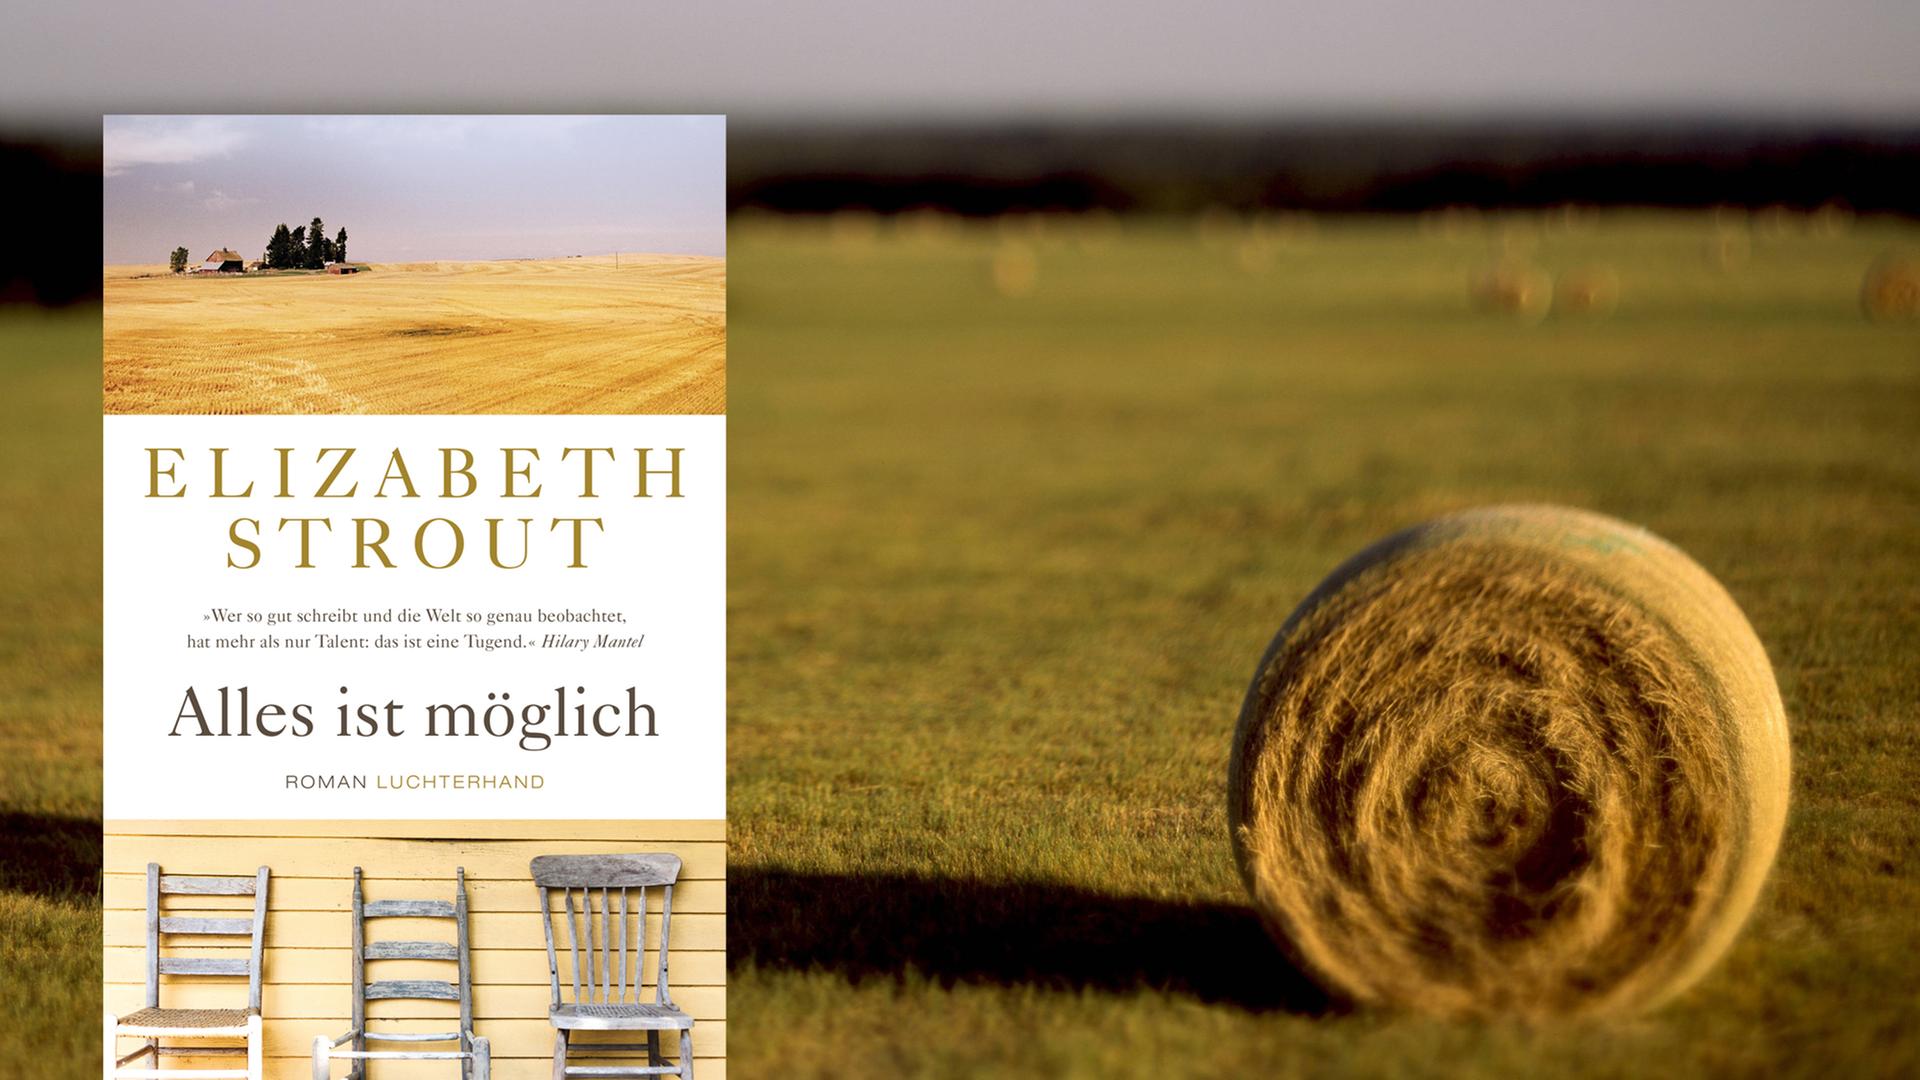 Buchcover Elizabeth Strout: "Alles ist möglich", im Hintergrund eine abgemähte Weide mit Grasballen.